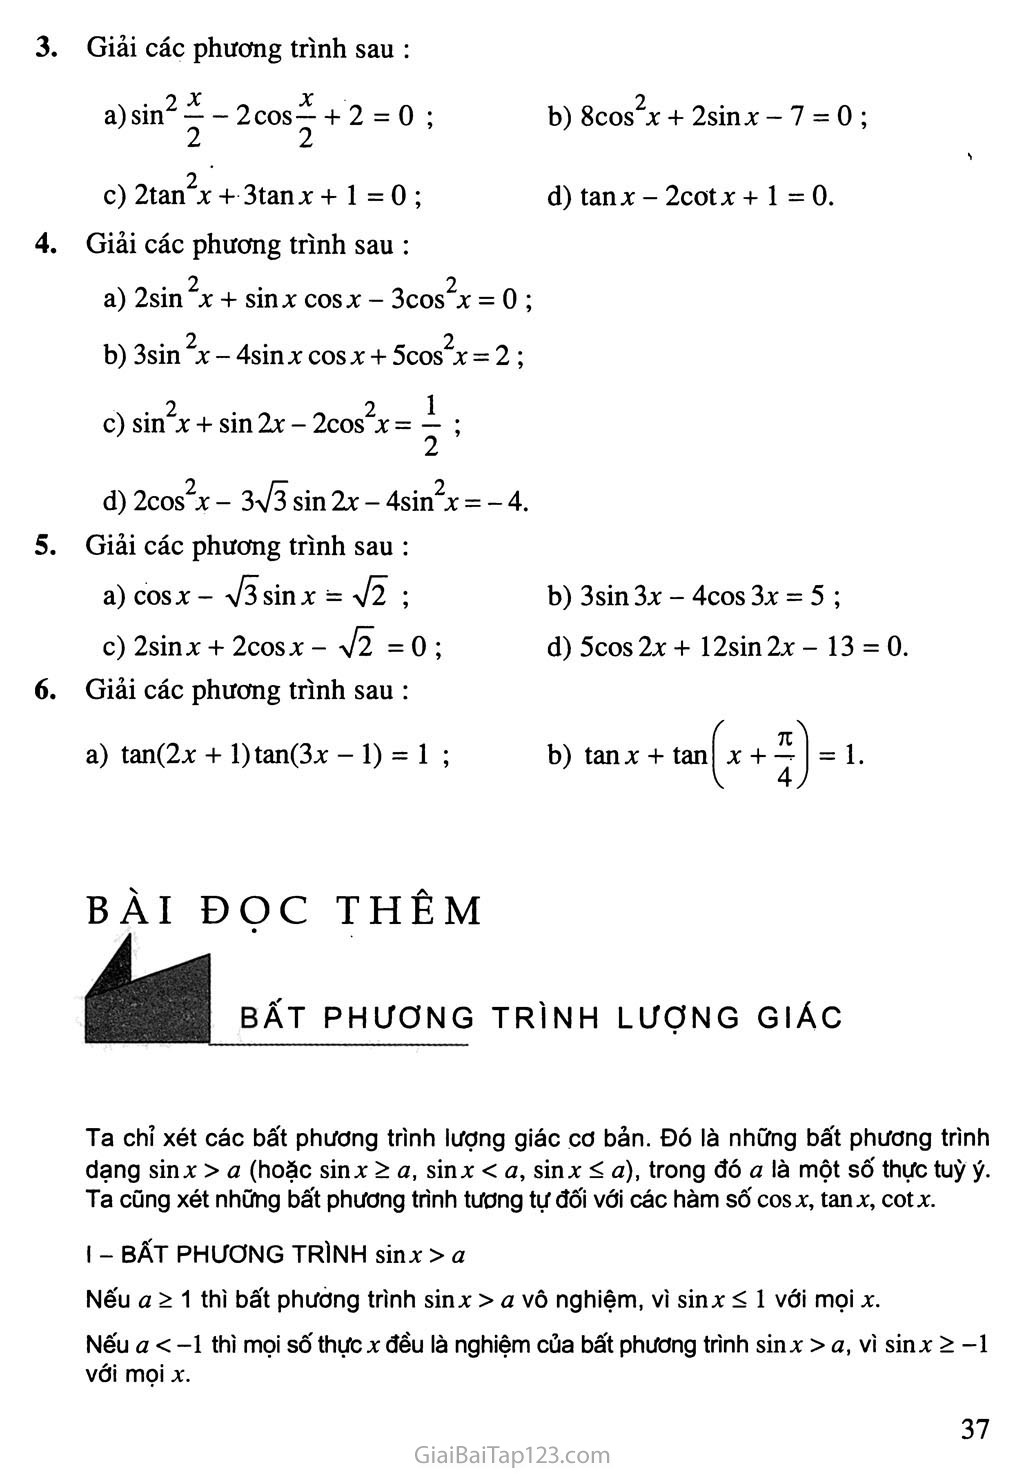 Bài 3. Một số phương trình lượng giác thường gặp trang 9